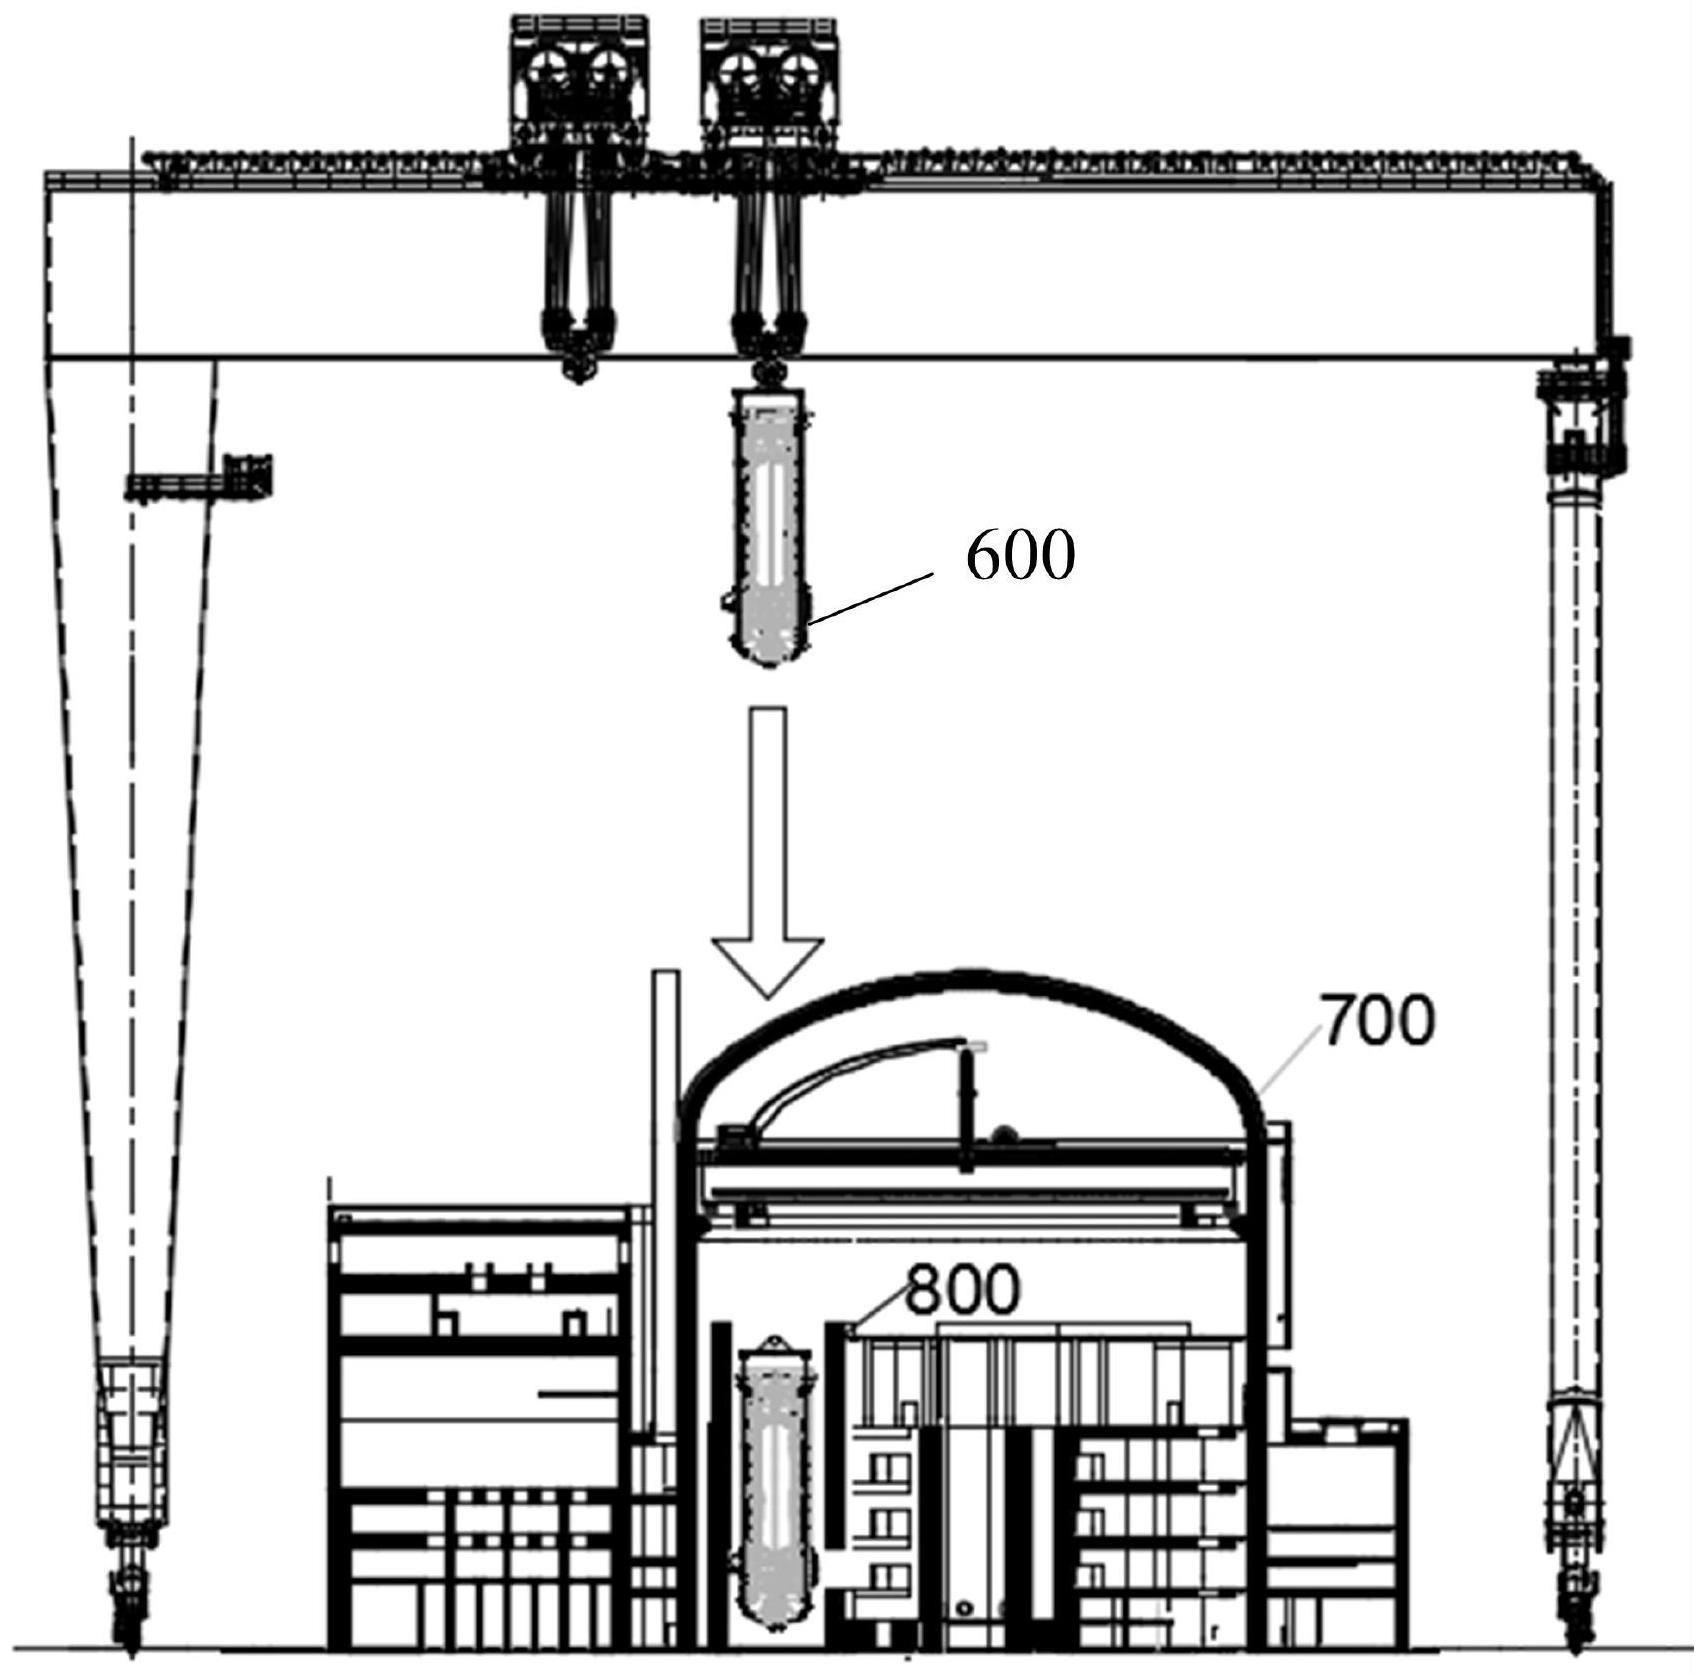 反应堆压力容器筒体与堆芯支承结构组装系统、安装方法与流程